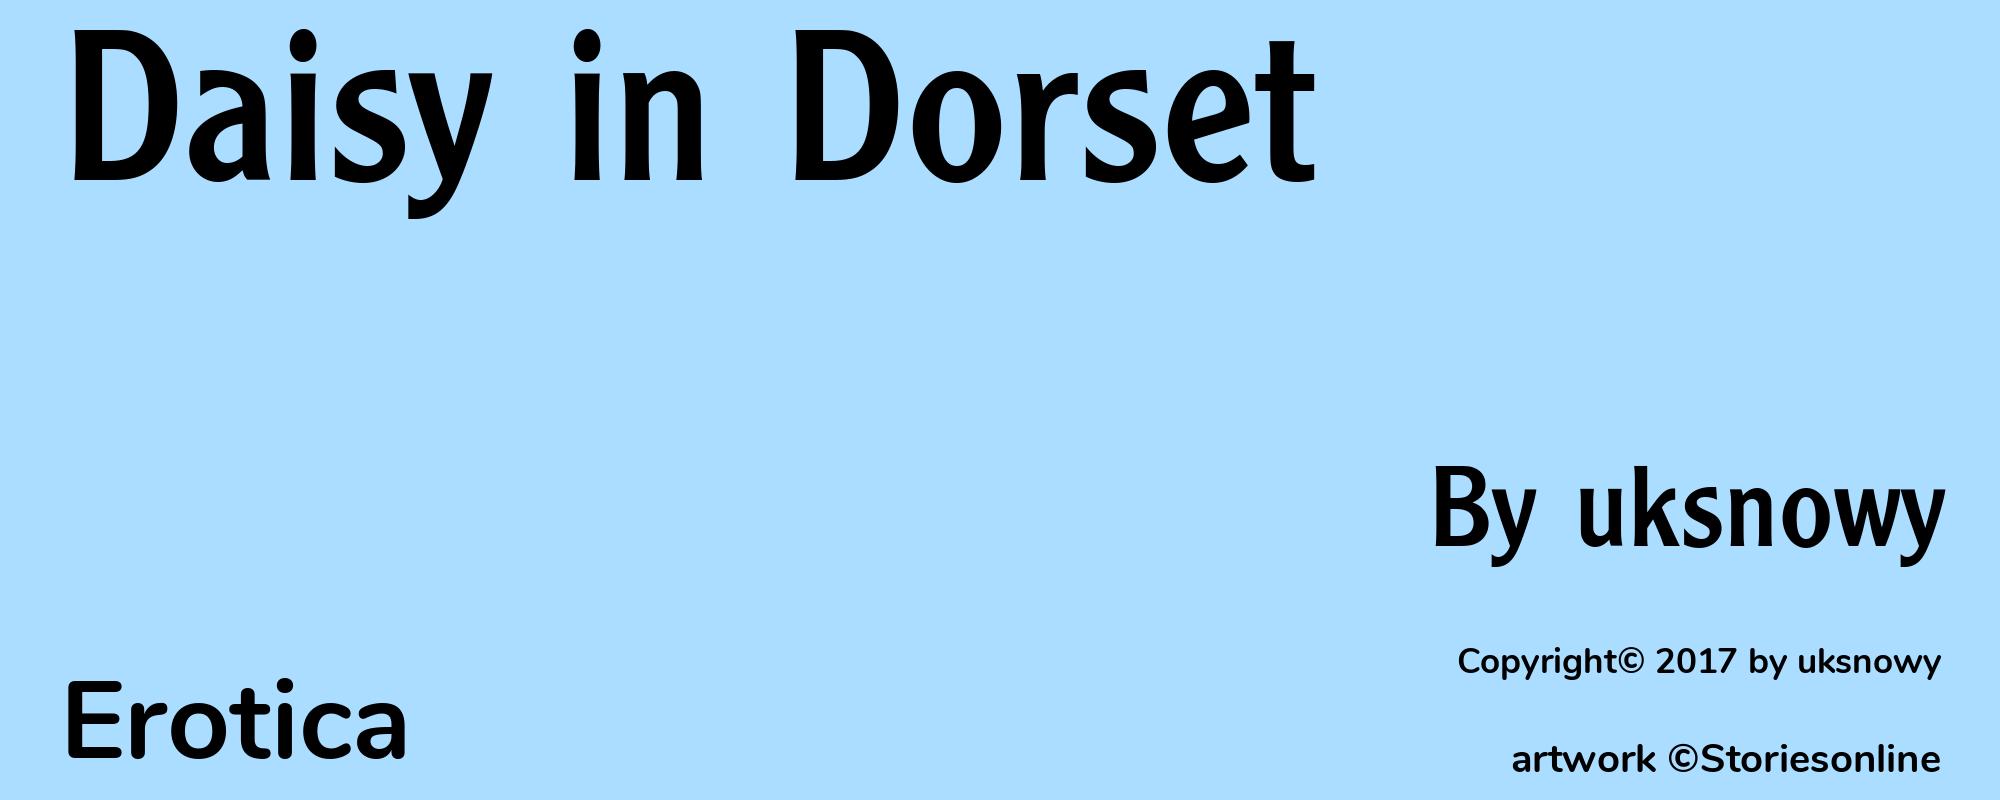 Daisy in Dorset - Cover